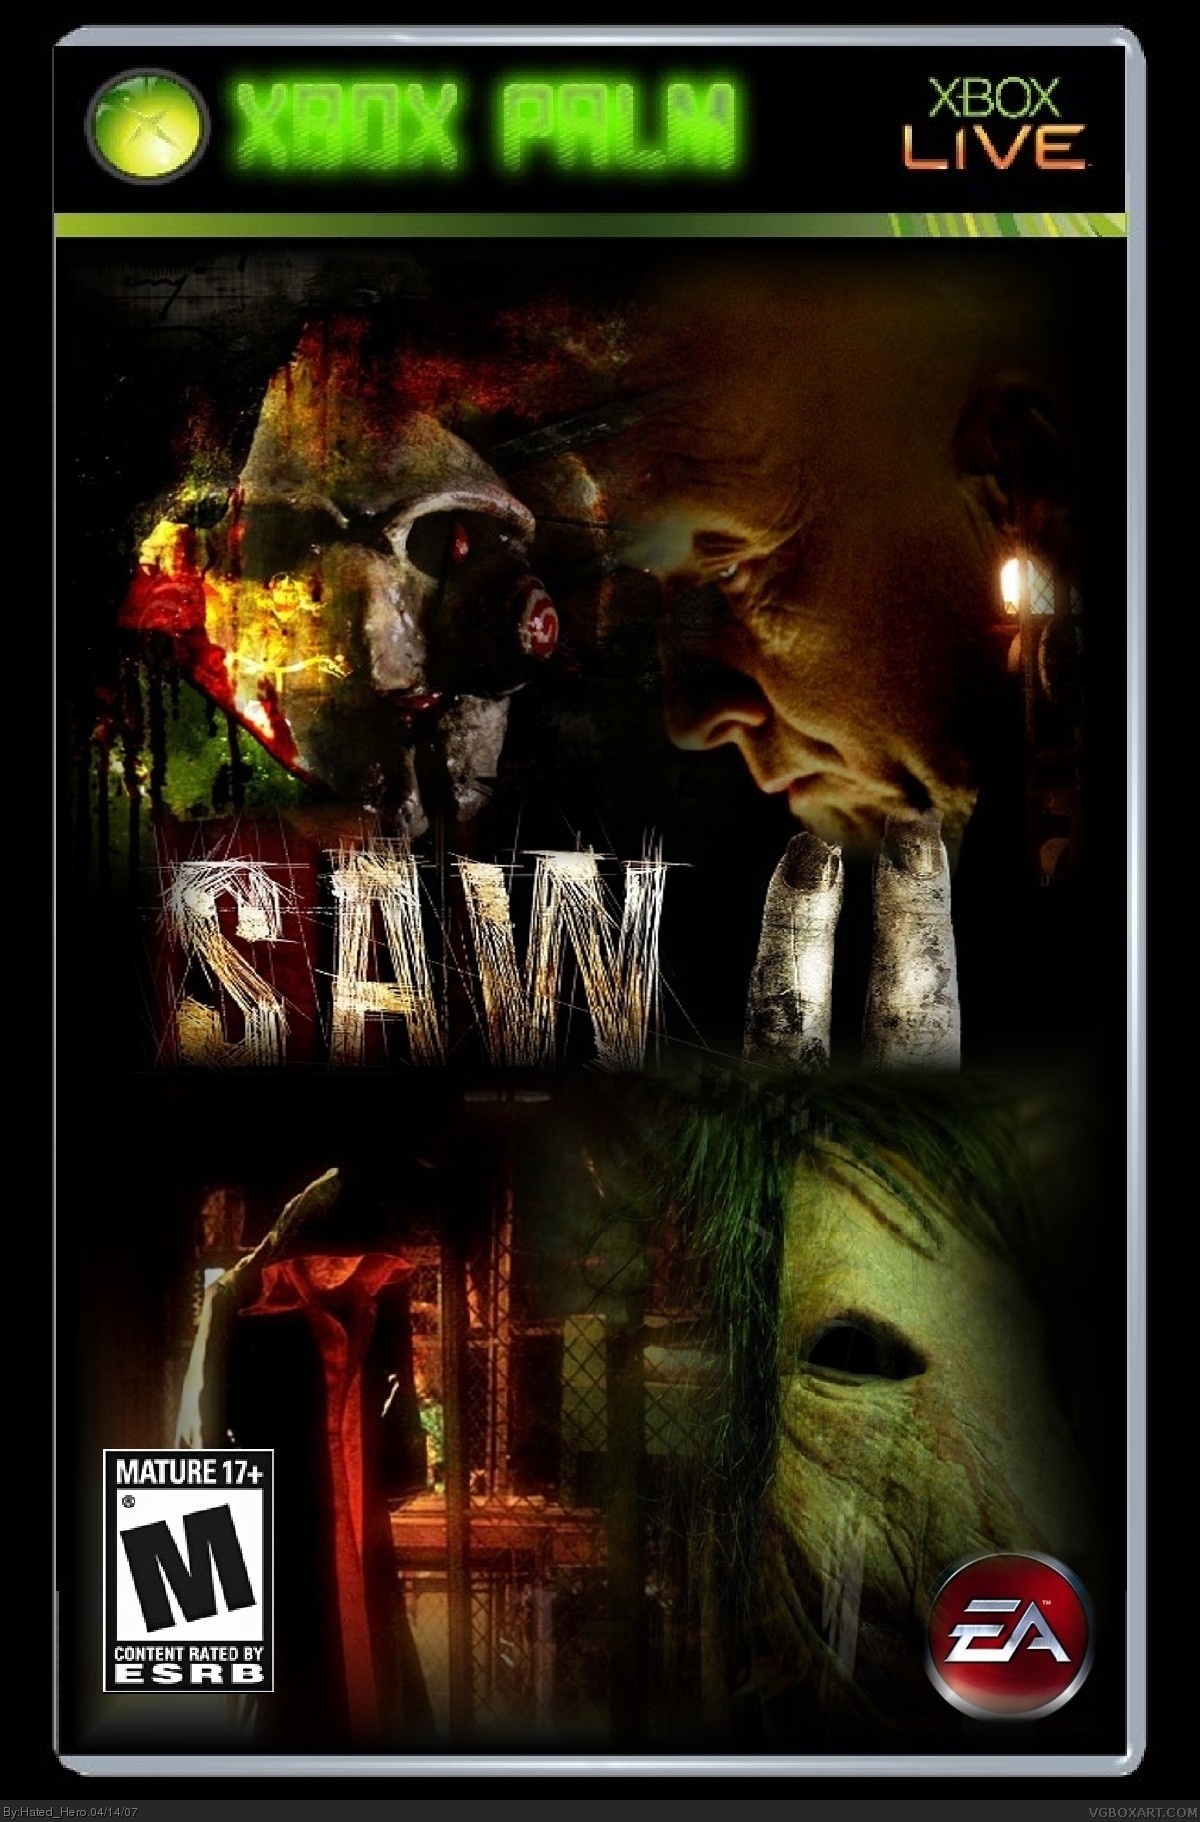 Saw II box cover